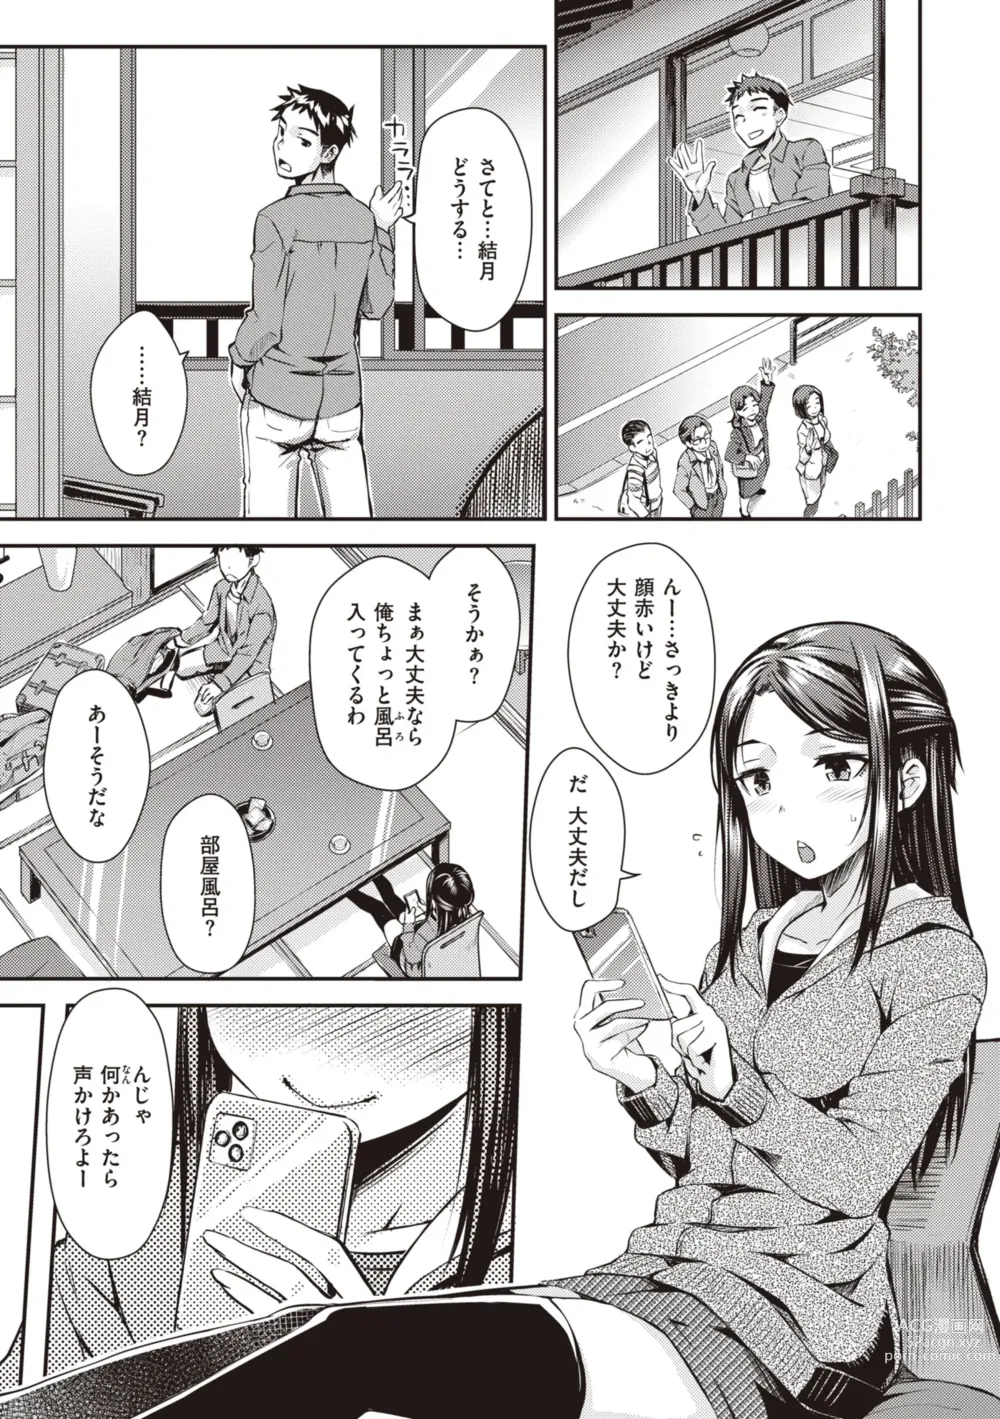 Page 7 of manga Ubukakushi